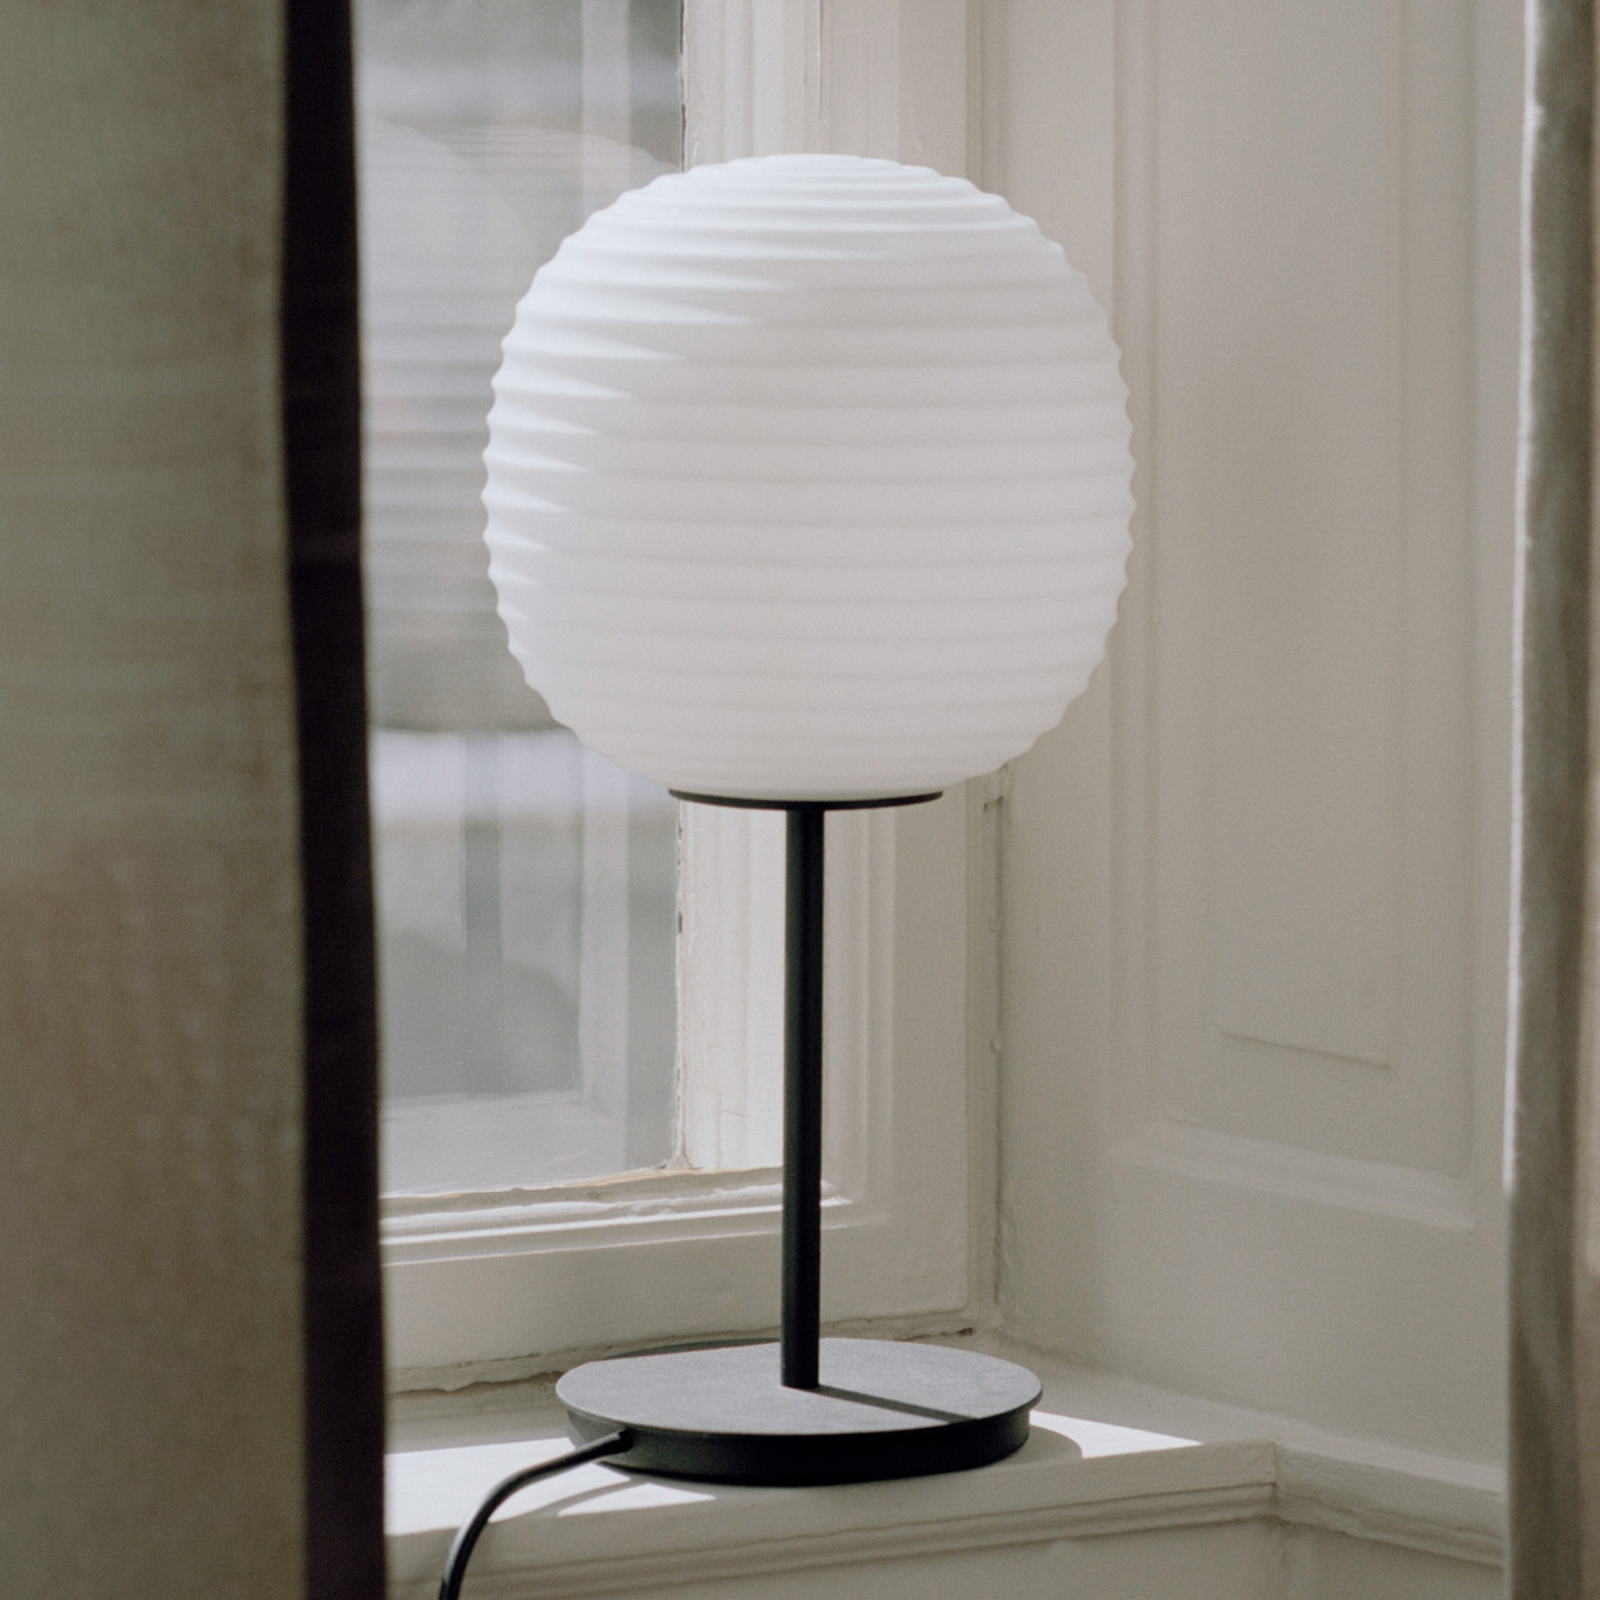 New Works Lantern Small lámpara de mesa, alto 40cm